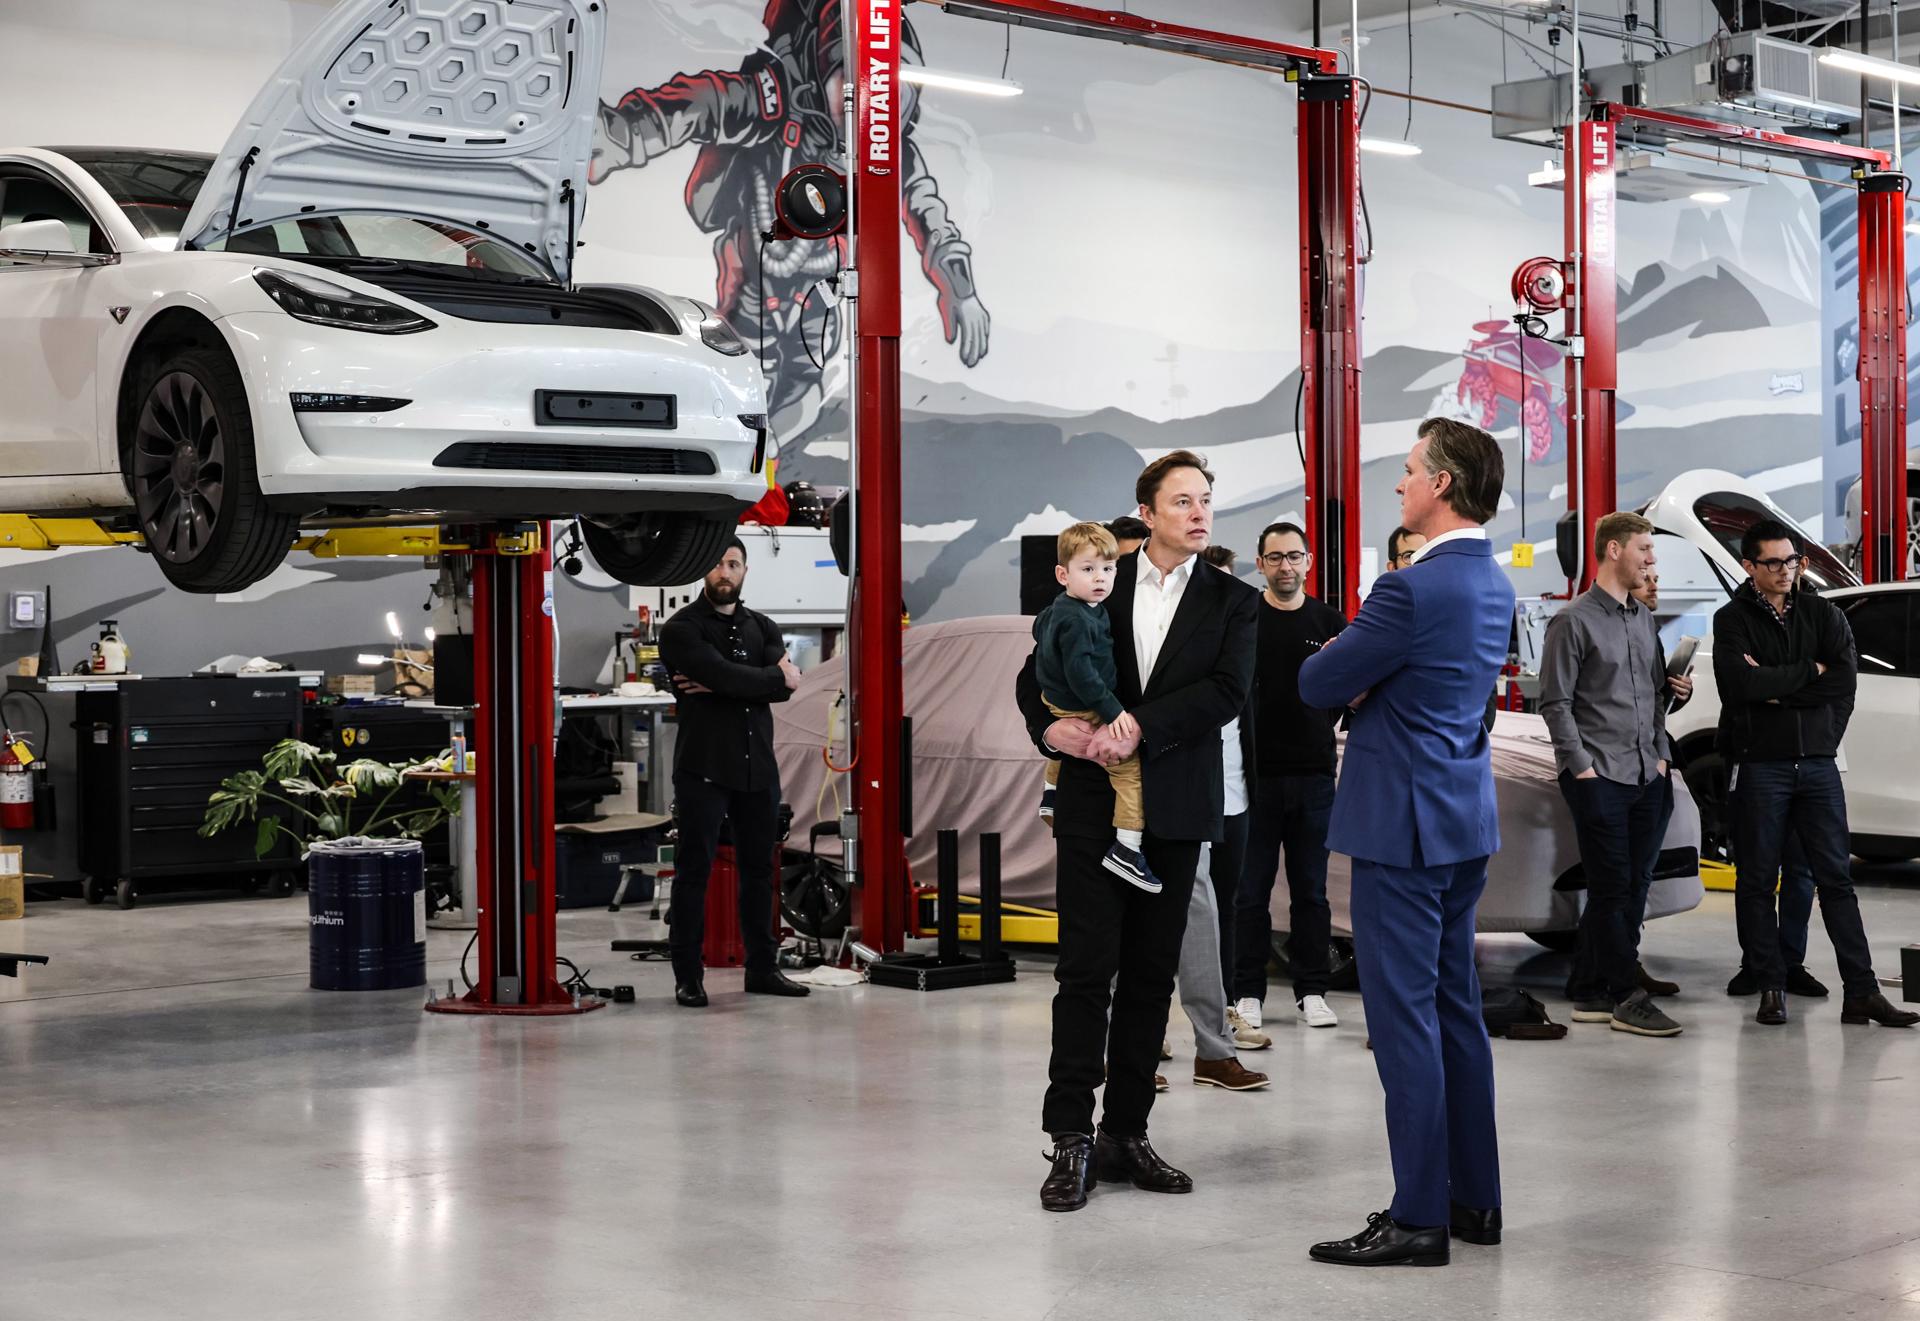 Palo Alto (Estados Unidos), 22/02/2023.- Una foto cedida por la oficina del gobernador muestra al gobernador de California Gavin Newsom (R) habla con el CEO de Tesla Elon Musk (C) y el hijo de Musk, X vÜ A-12, durante un recorrido por la nueva sede mundial de ingeniería e IA de Tesla en Palo Alto, California, EE.UU., el 22 de febrero de 2023. (Estados Unidos) EFE/EPA/Oficina del gobernador.